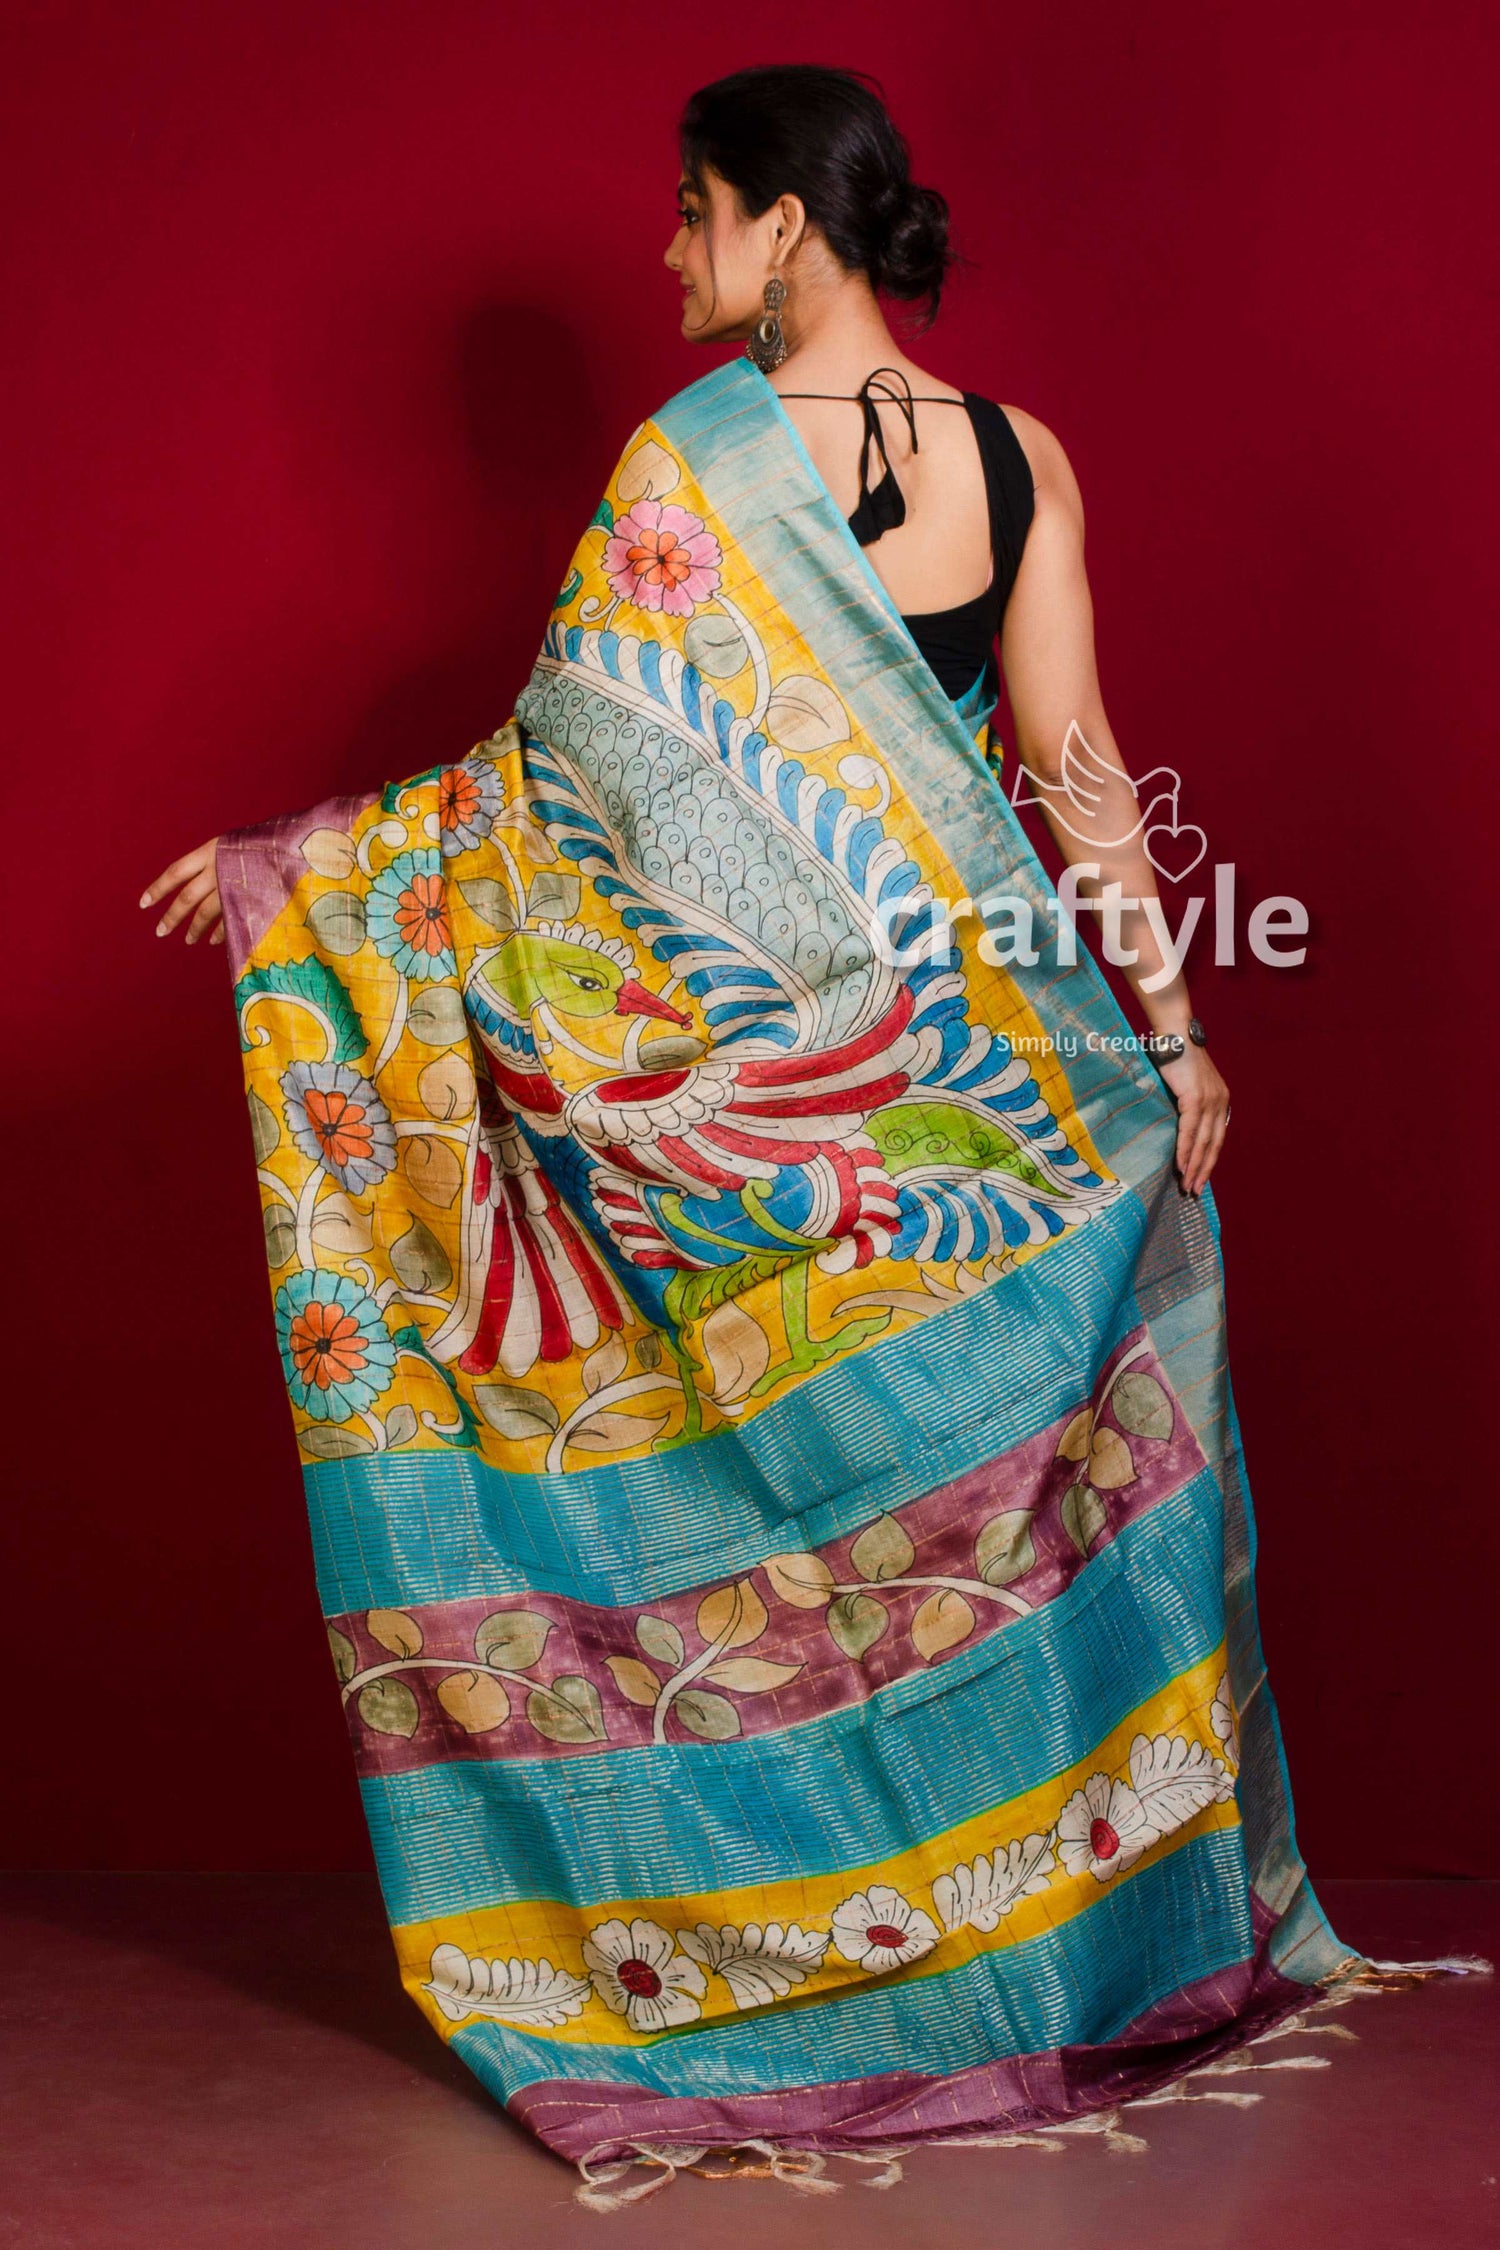 Handcrafted Kalamkari Deep Blush Pure Tussar Silk Saree with Zari Border - Craftyle